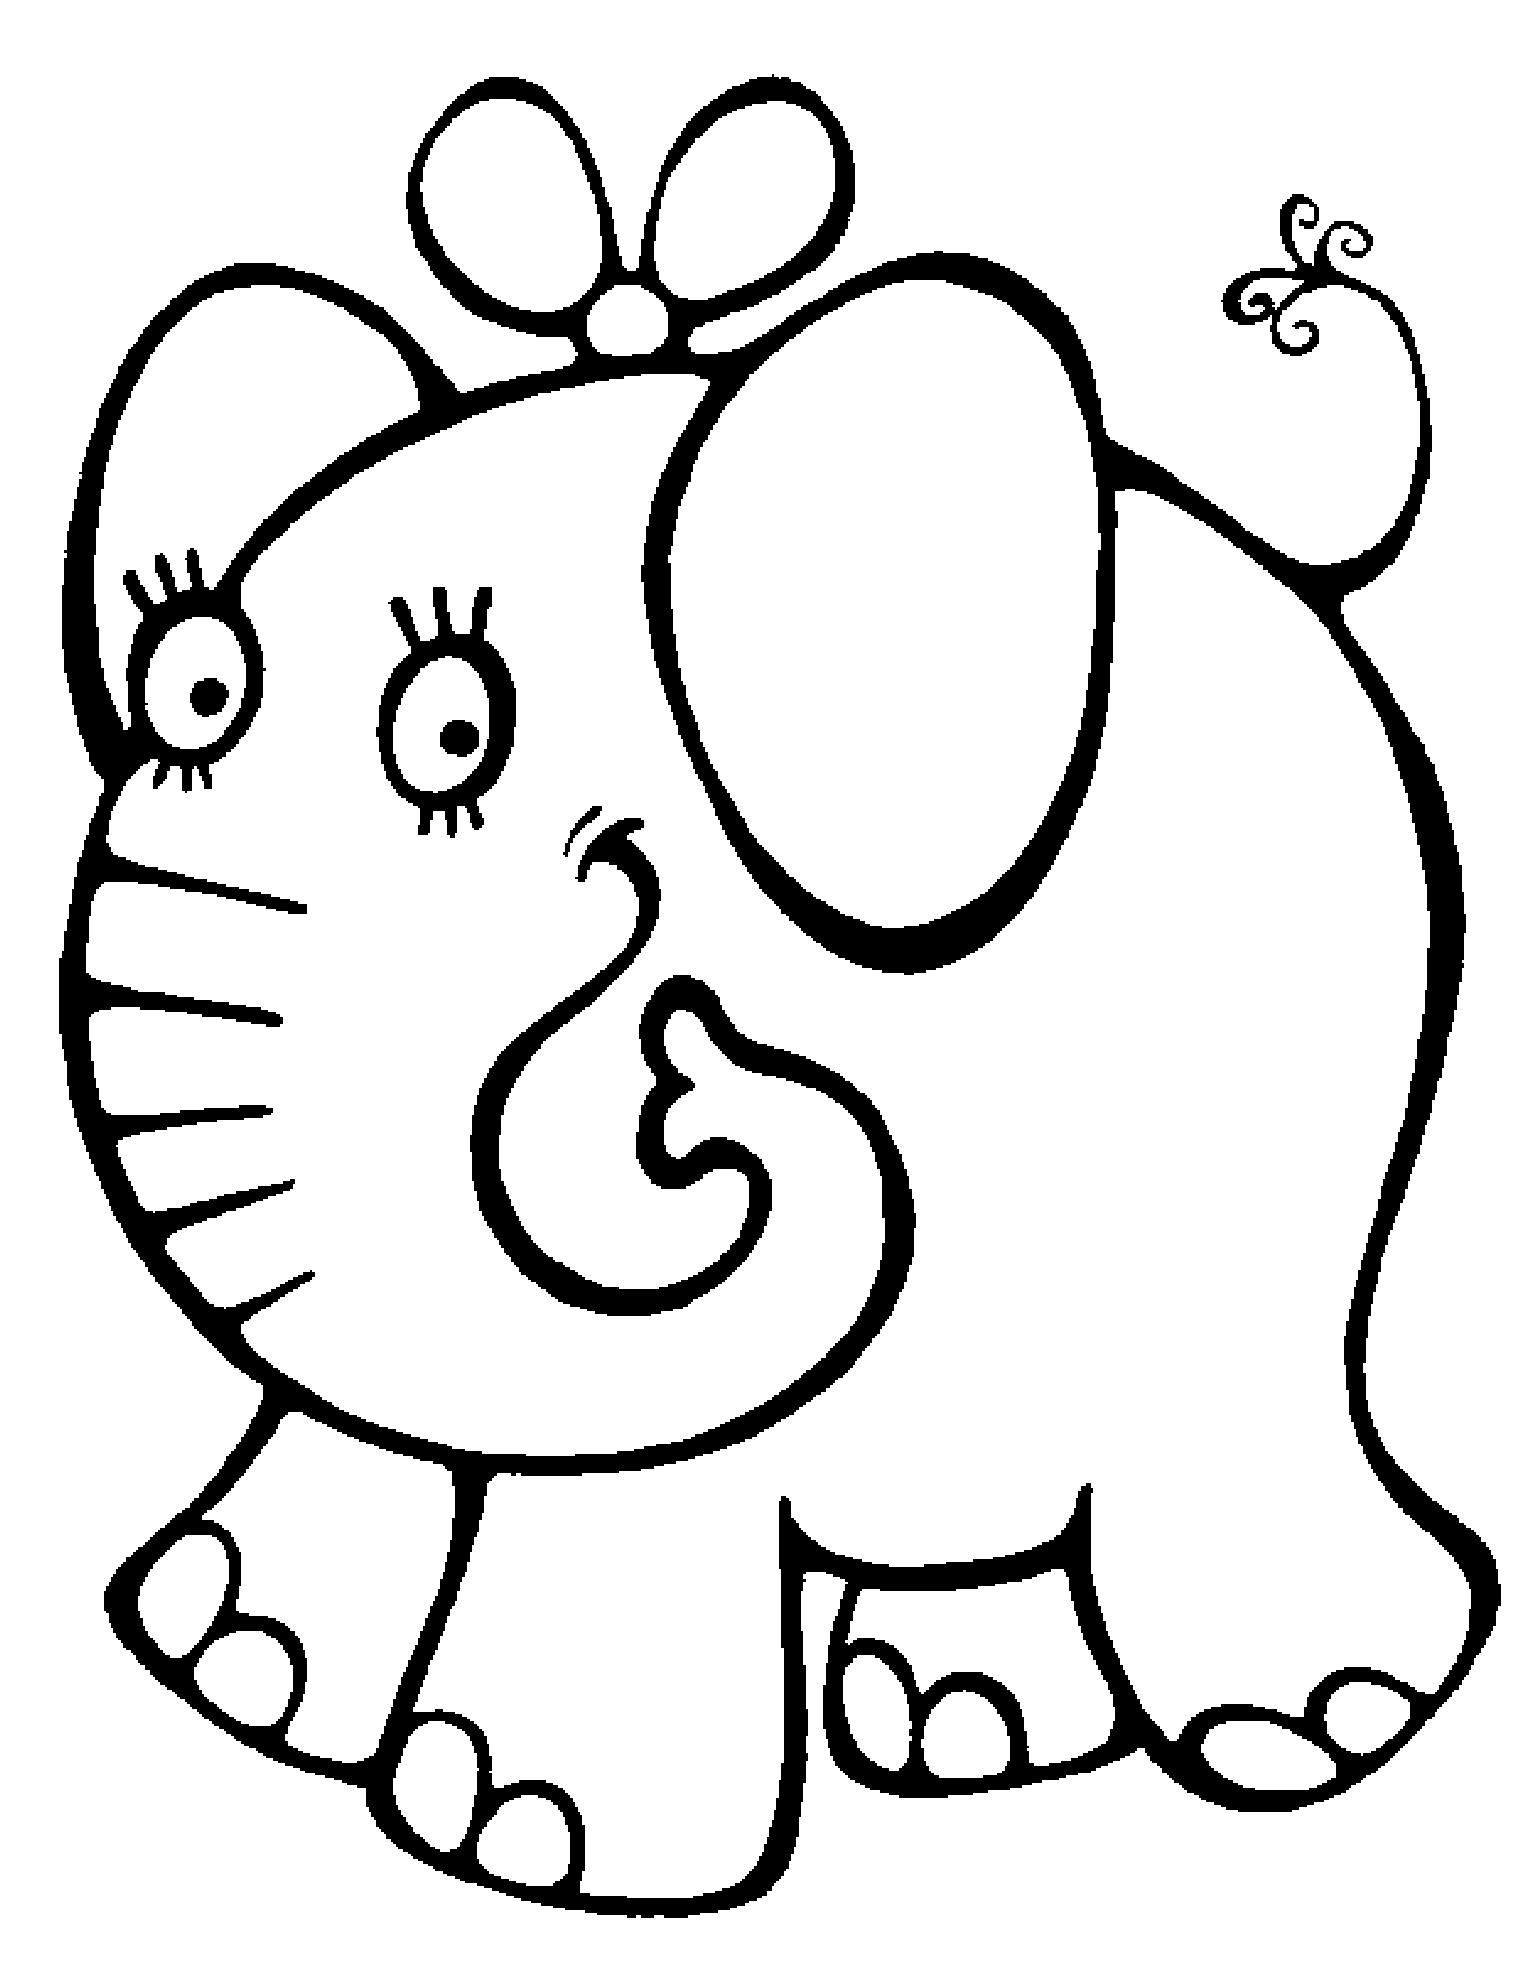 Раскраска для детей 2-4 года с изображением слоника бантиком (2-4, года, слоник)